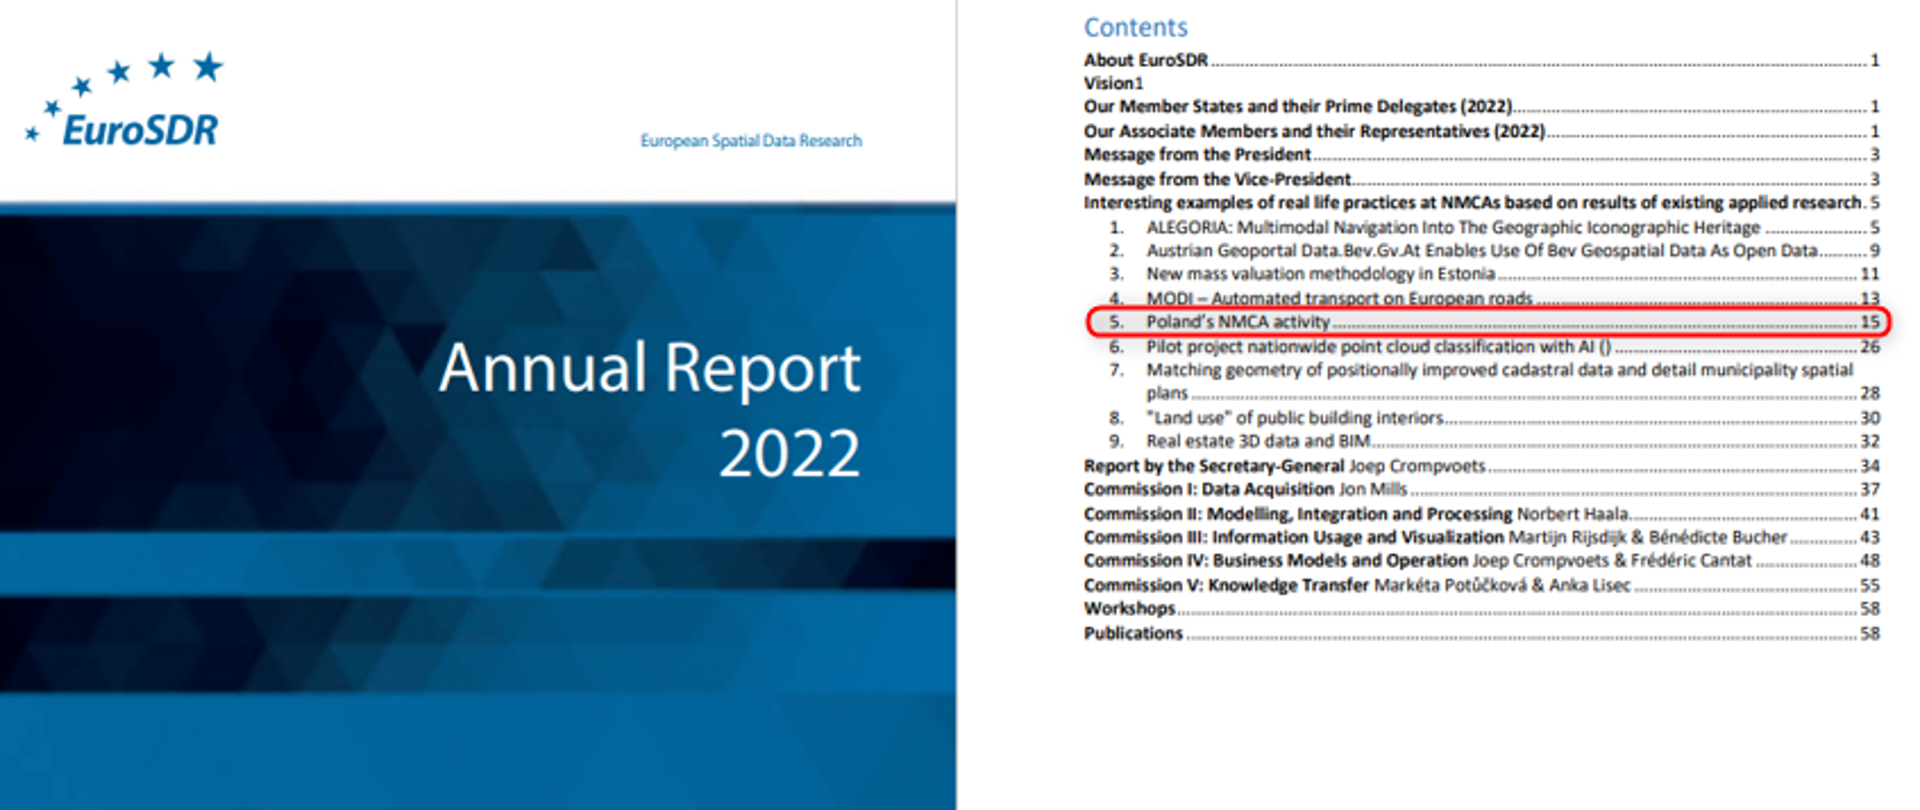 Zrzut przedstawia okładkę i spis treści Rocznego Raportu EuroSDR 